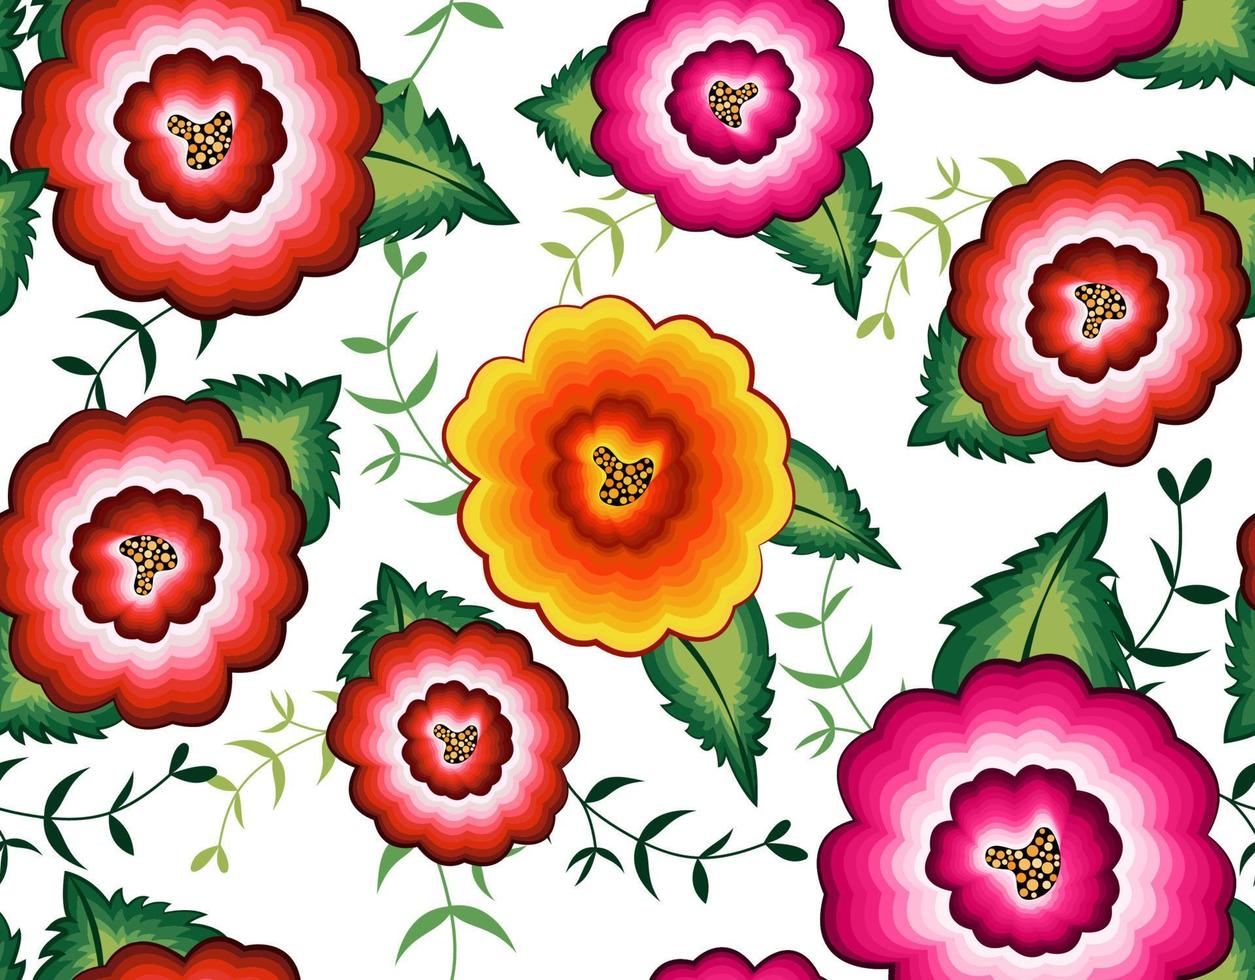 padrão de bordado floral mexicano sem costura, design de moda folclórica de flores nativas coloridas. bordado estilo têxtil tradicional do México, vetor isolado no fundo branco